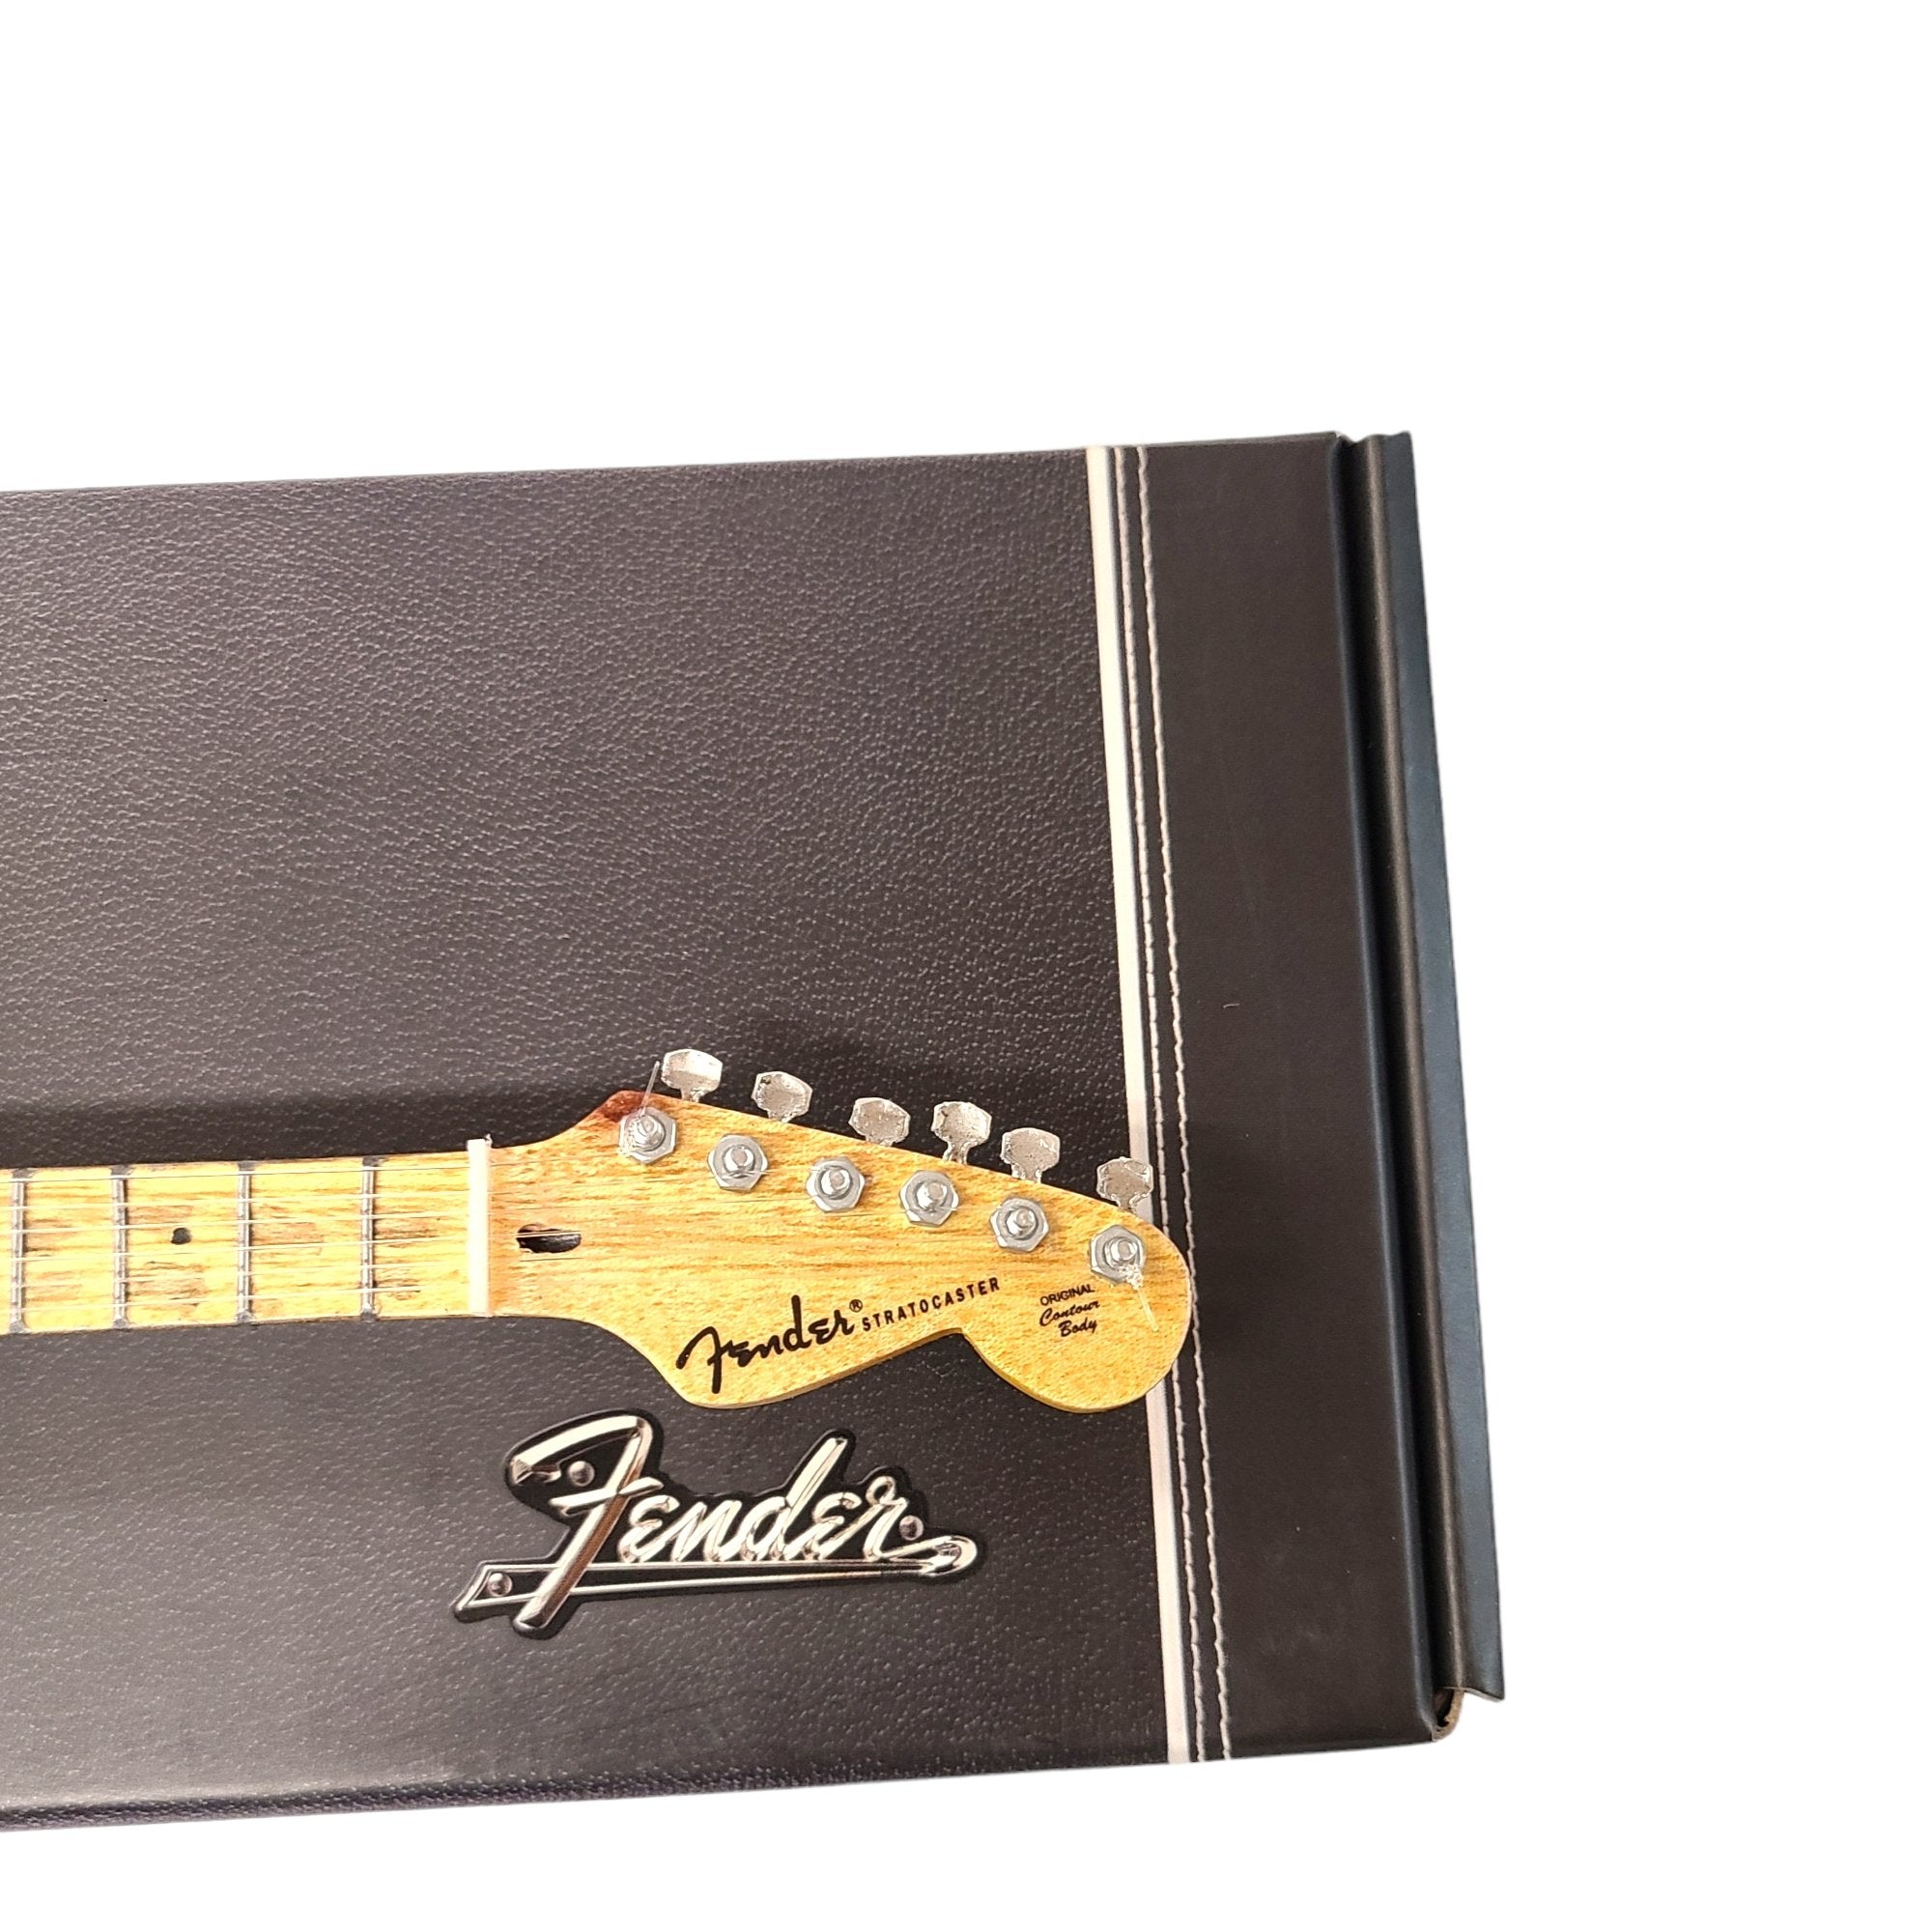 Axe Heaven Brownie Fender Stratocaster Mini Guitar Replica, FS-025